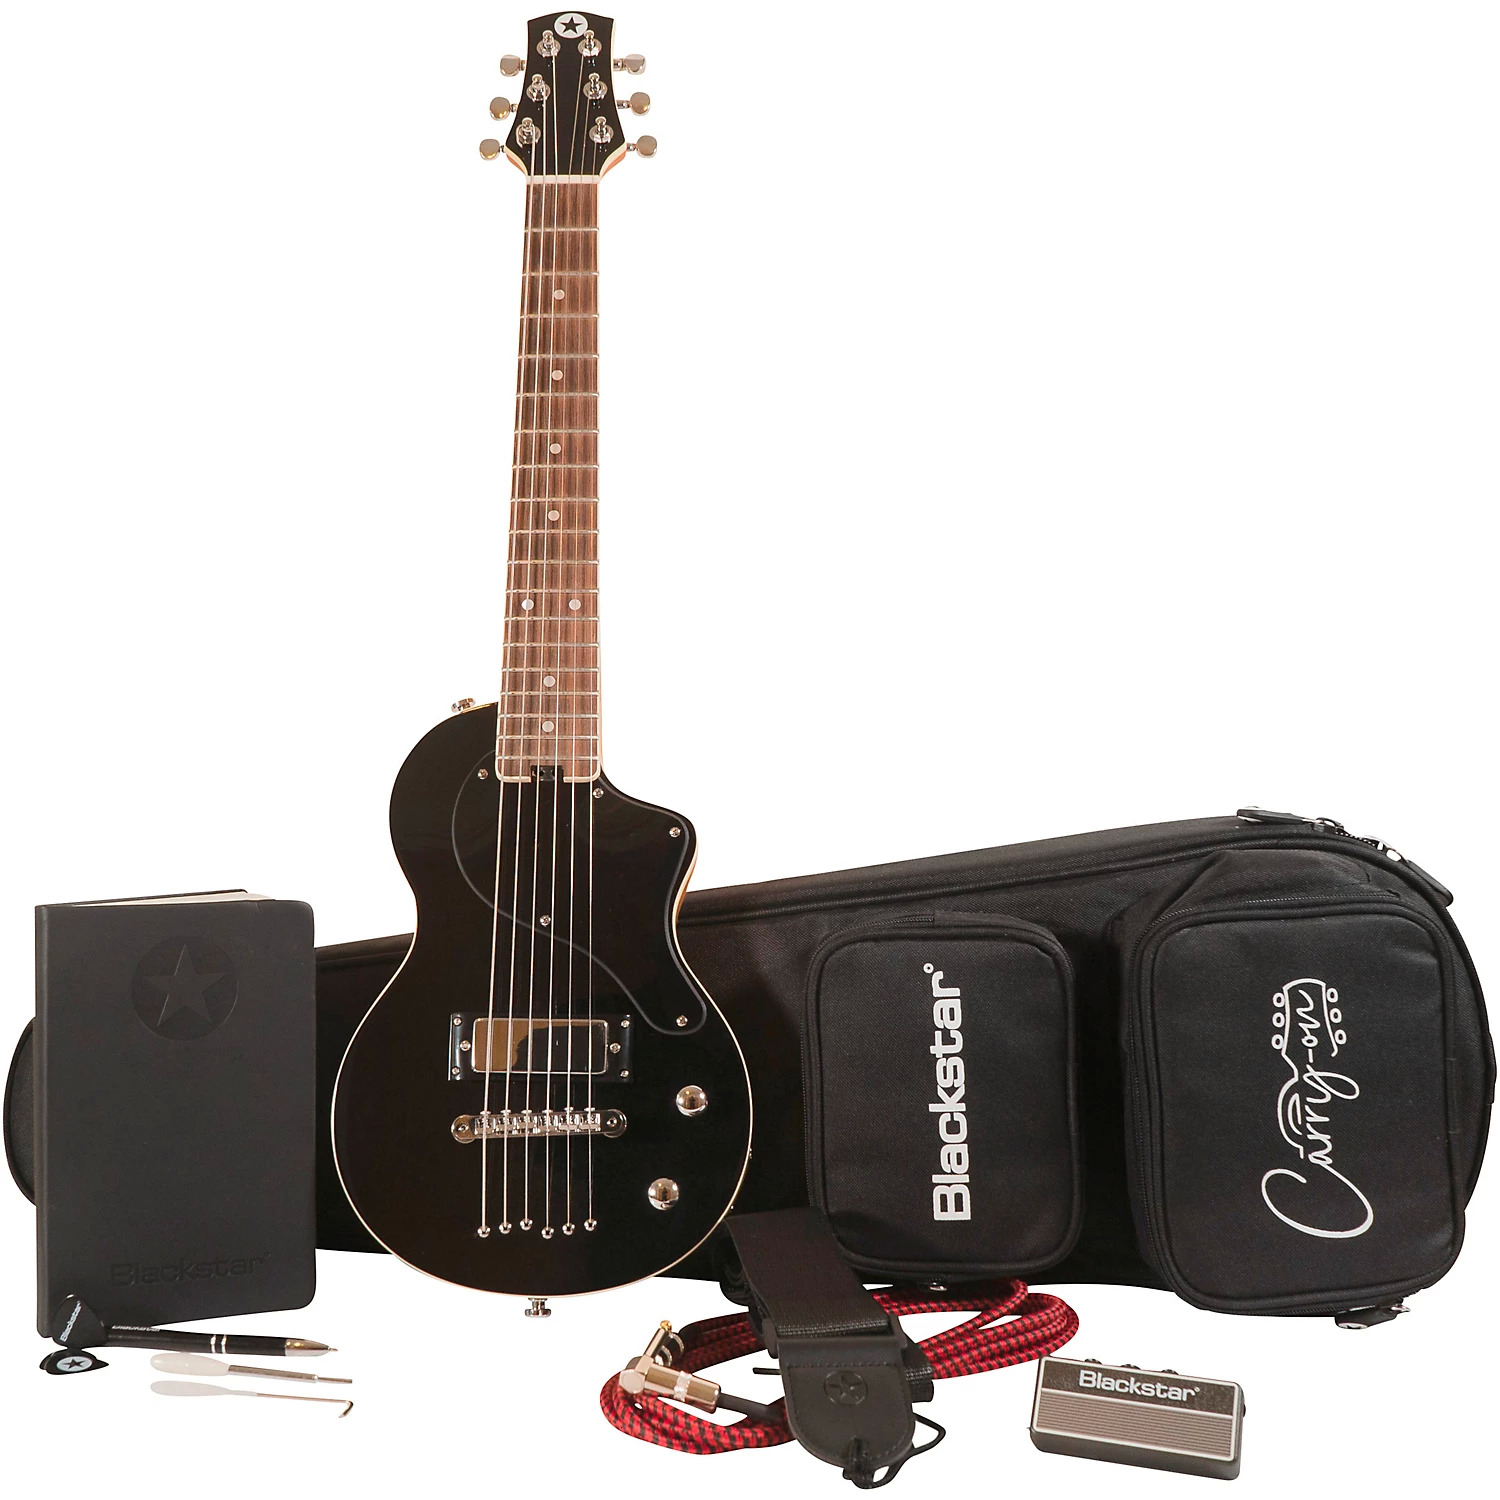 blackstar guitar kit - $150